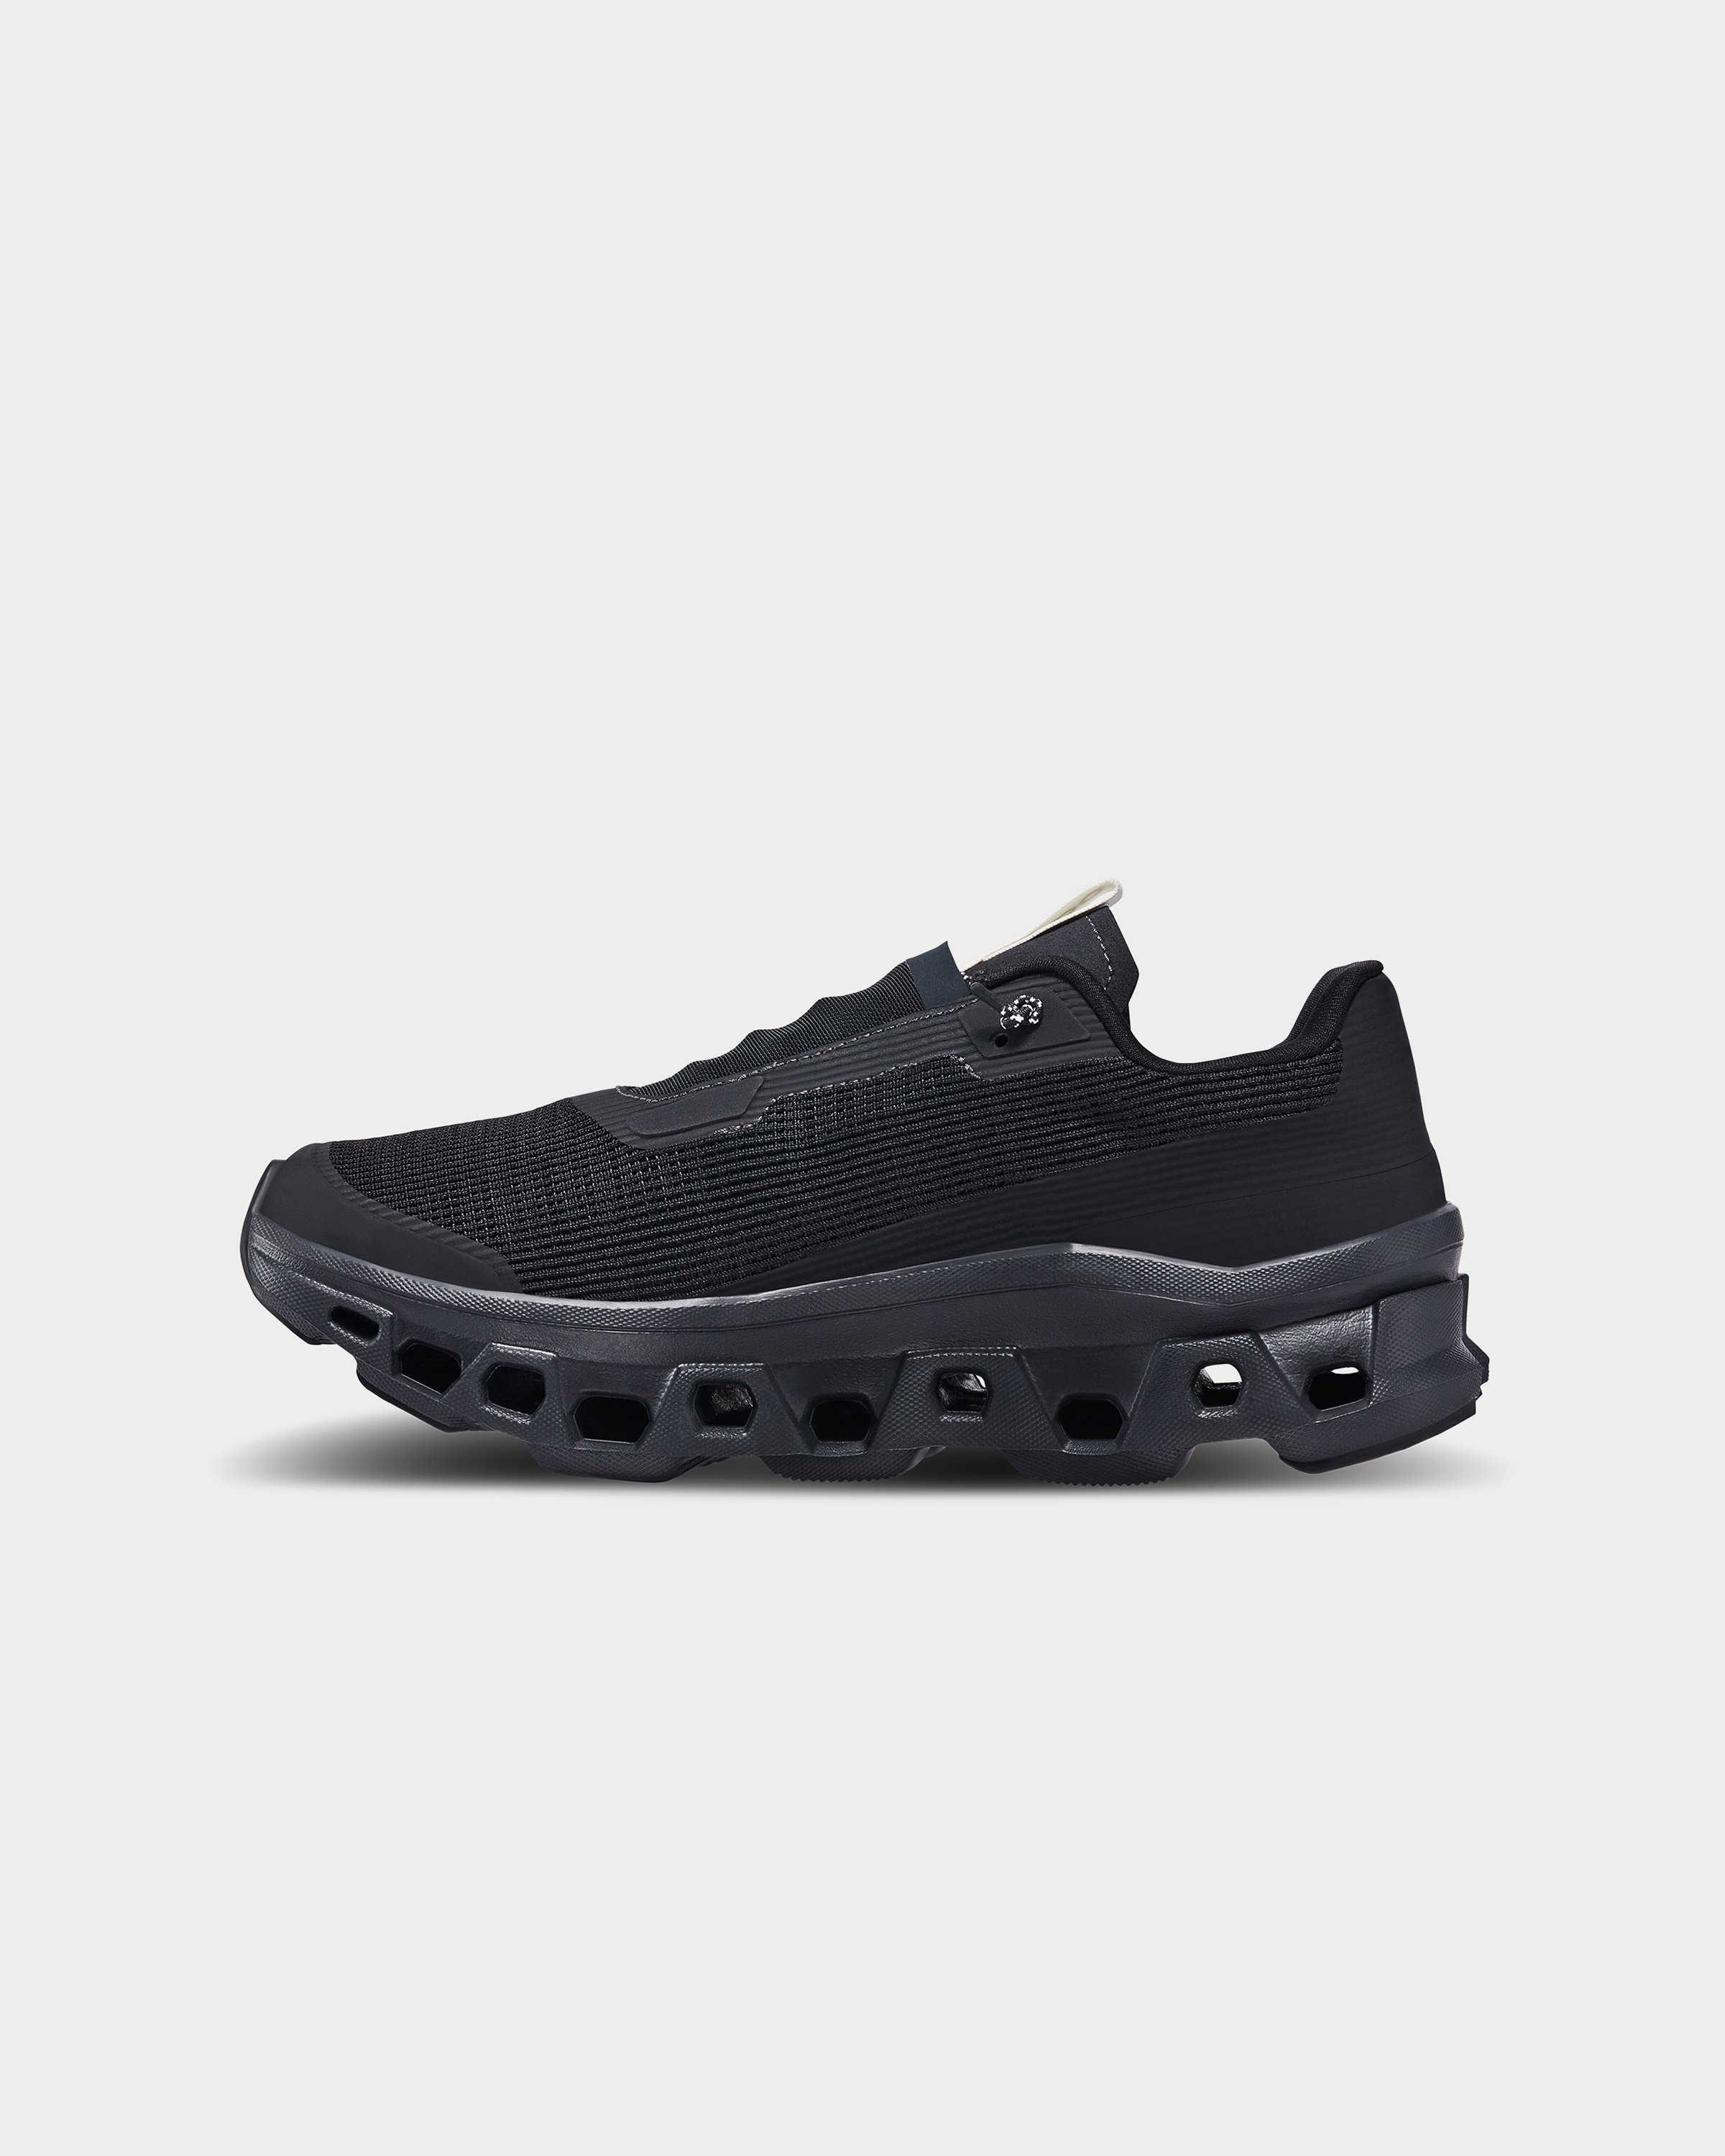 On - Cloudmonster Sensa Black - Footwear - Black - Image 2